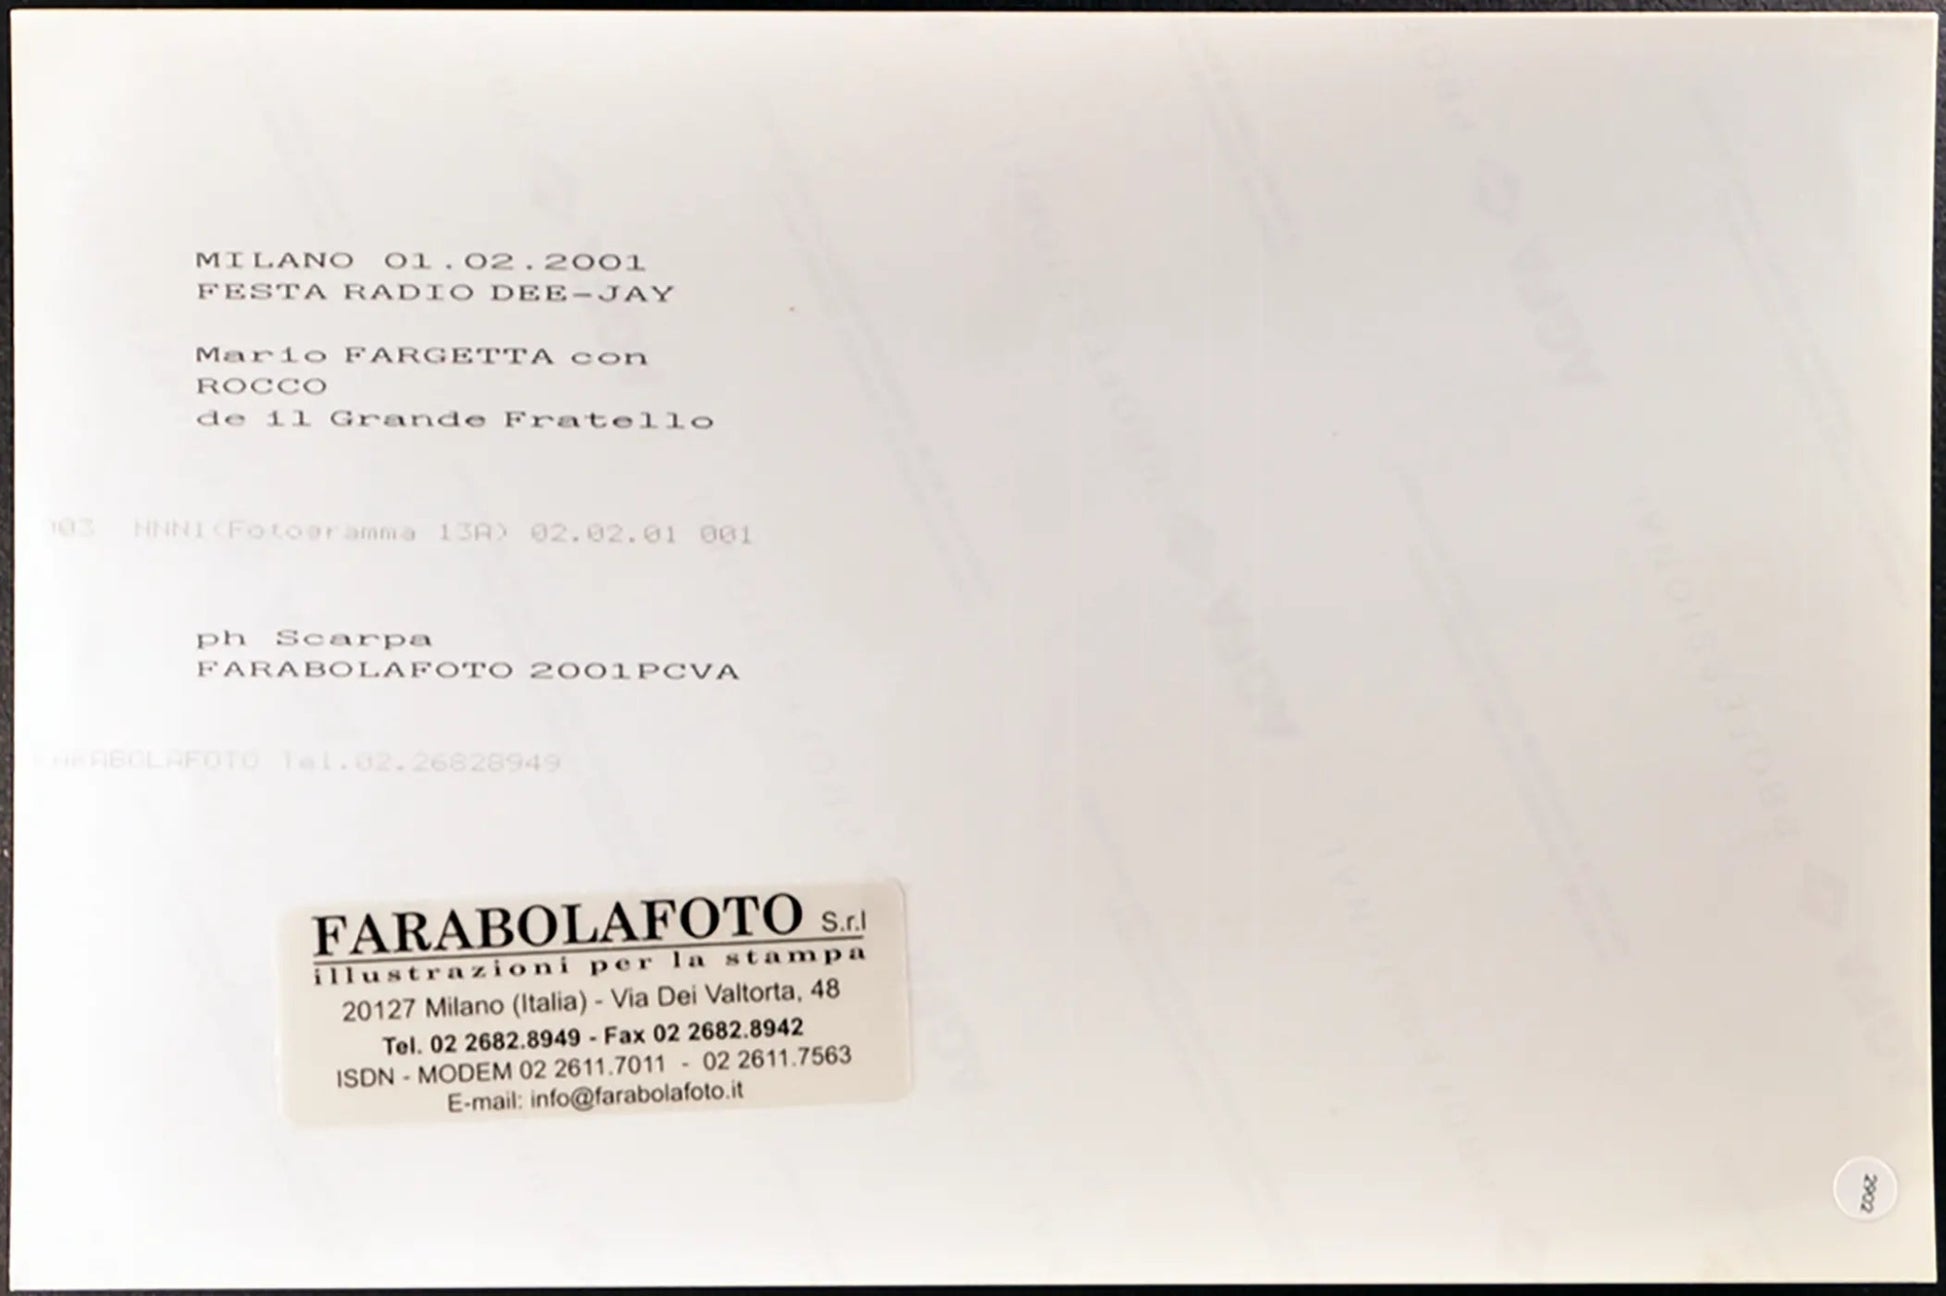 Mario Fargetta e Rocco Casalino 2001 Ft 2902 - Stampa 20x30 cm - Farabola Stampa digitale